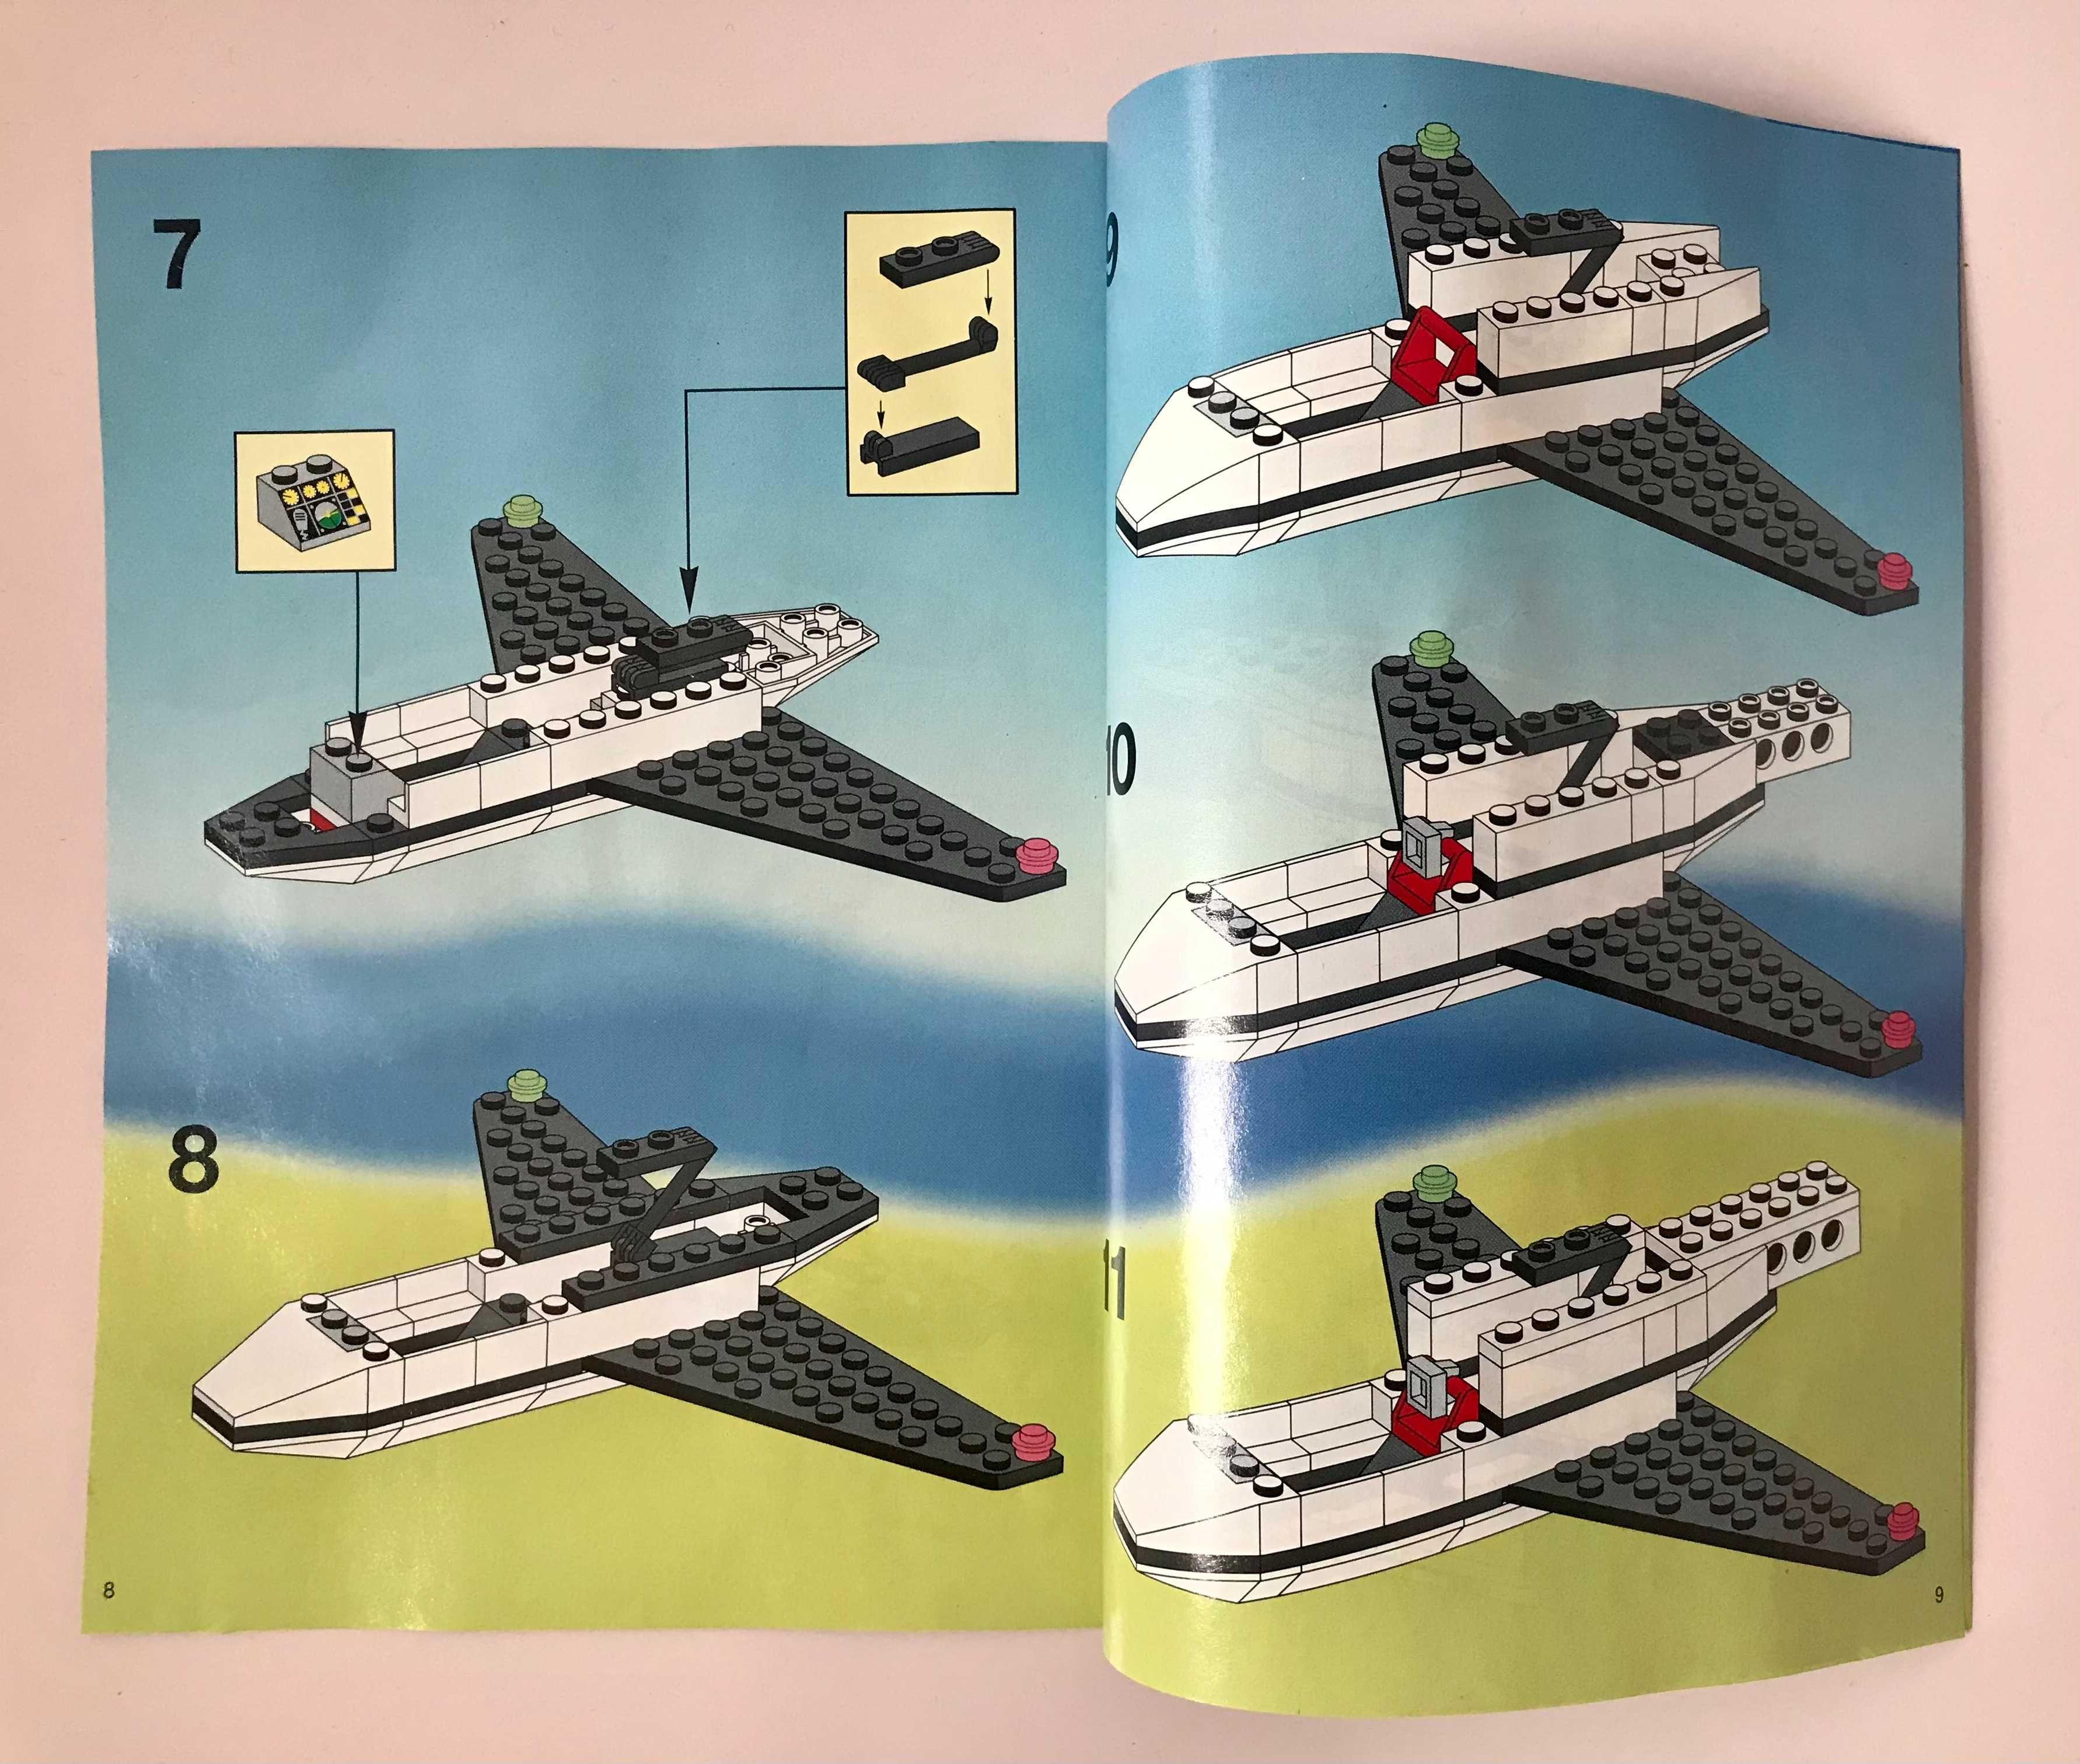 Pudełko + instrukcja do zestawu Lego 6344, oryginał 1993 rok.